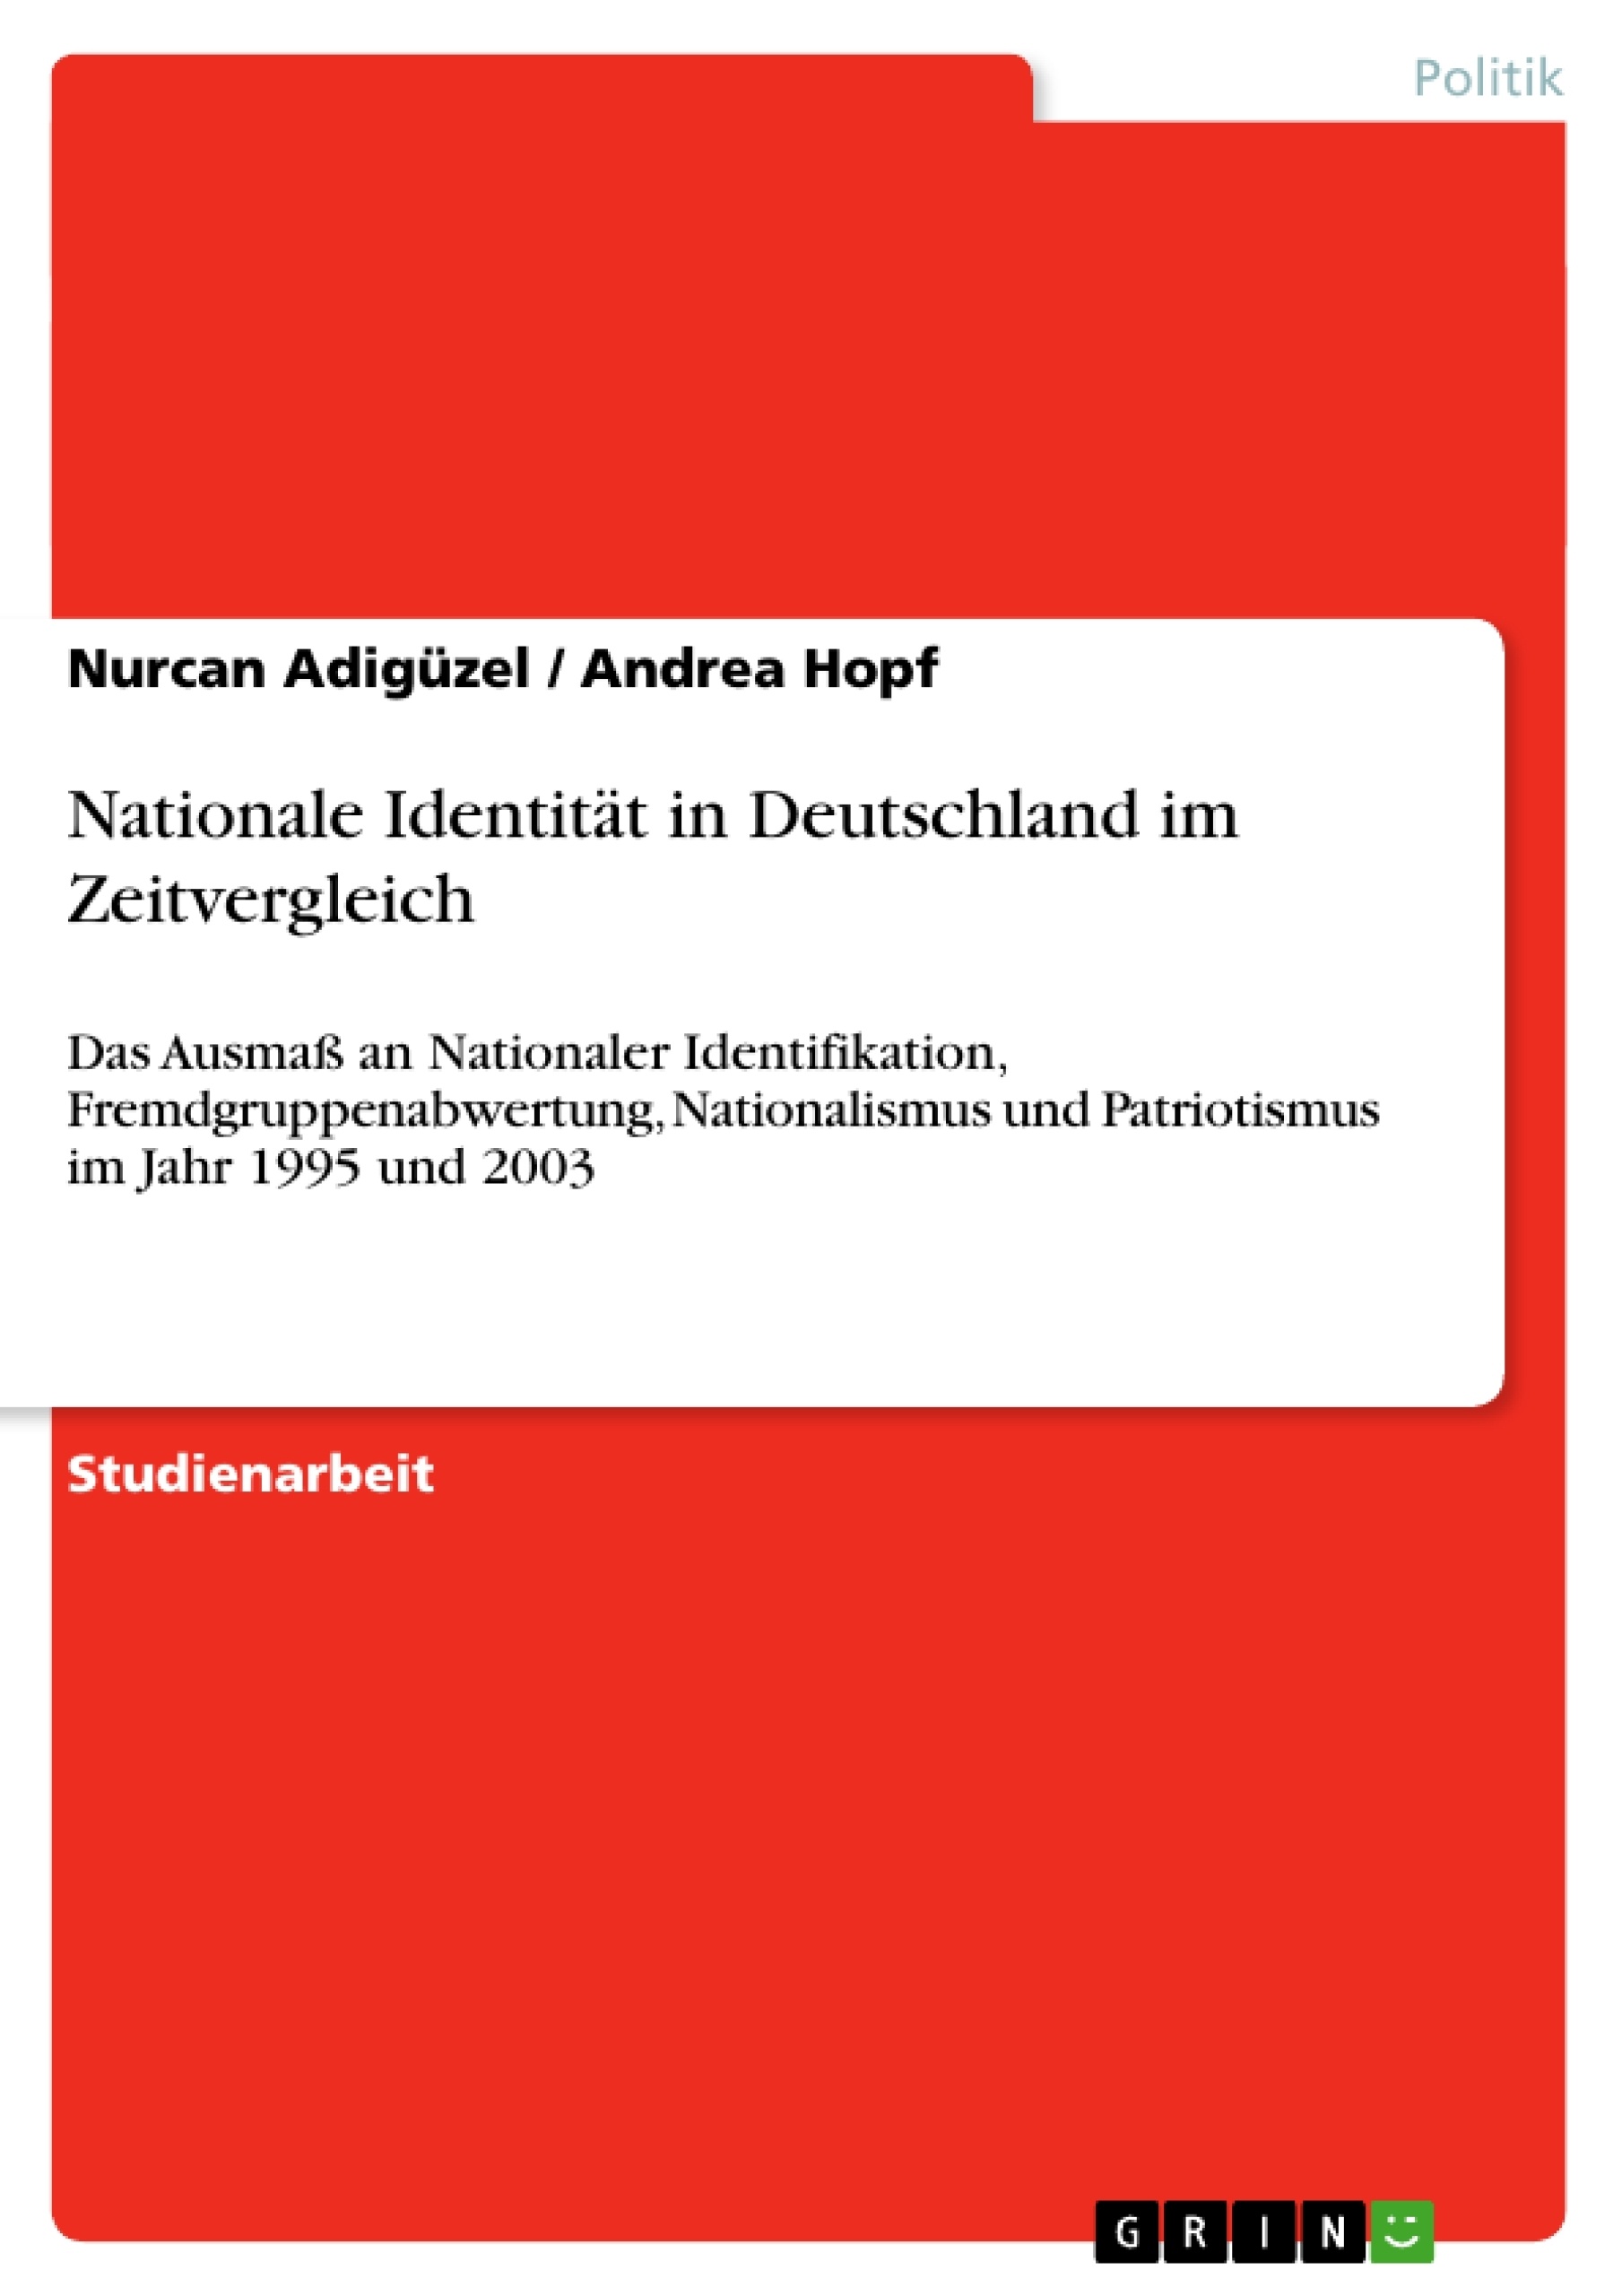 Title: Nationale Identität in Deutschland im Zeitvergleich